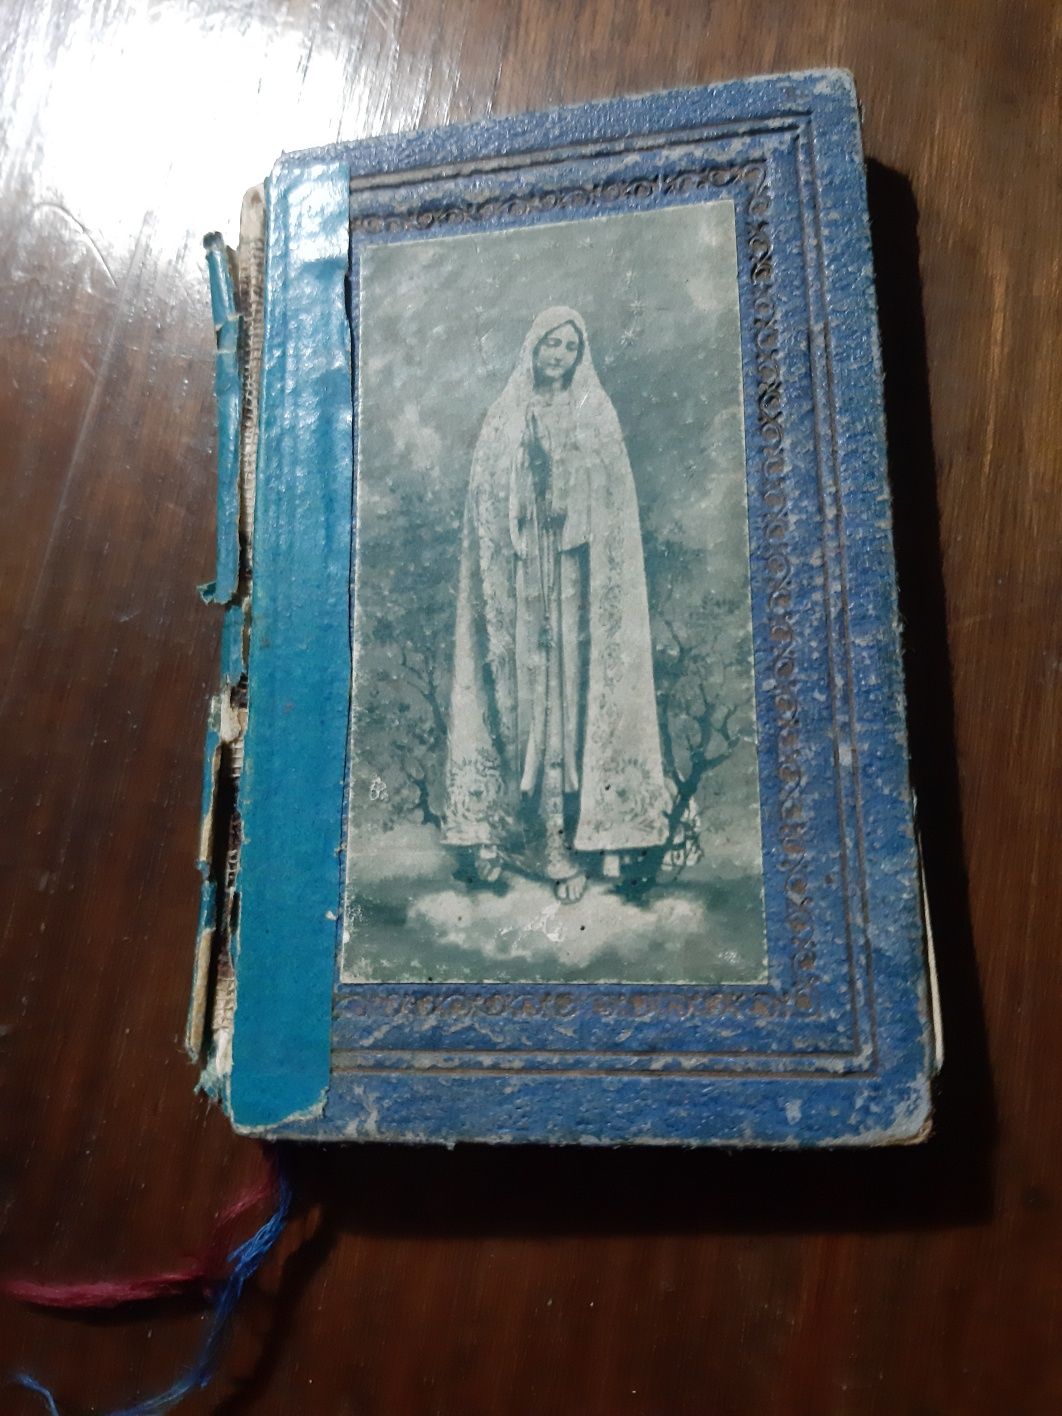 Livro de Missa e orações dos anos 30